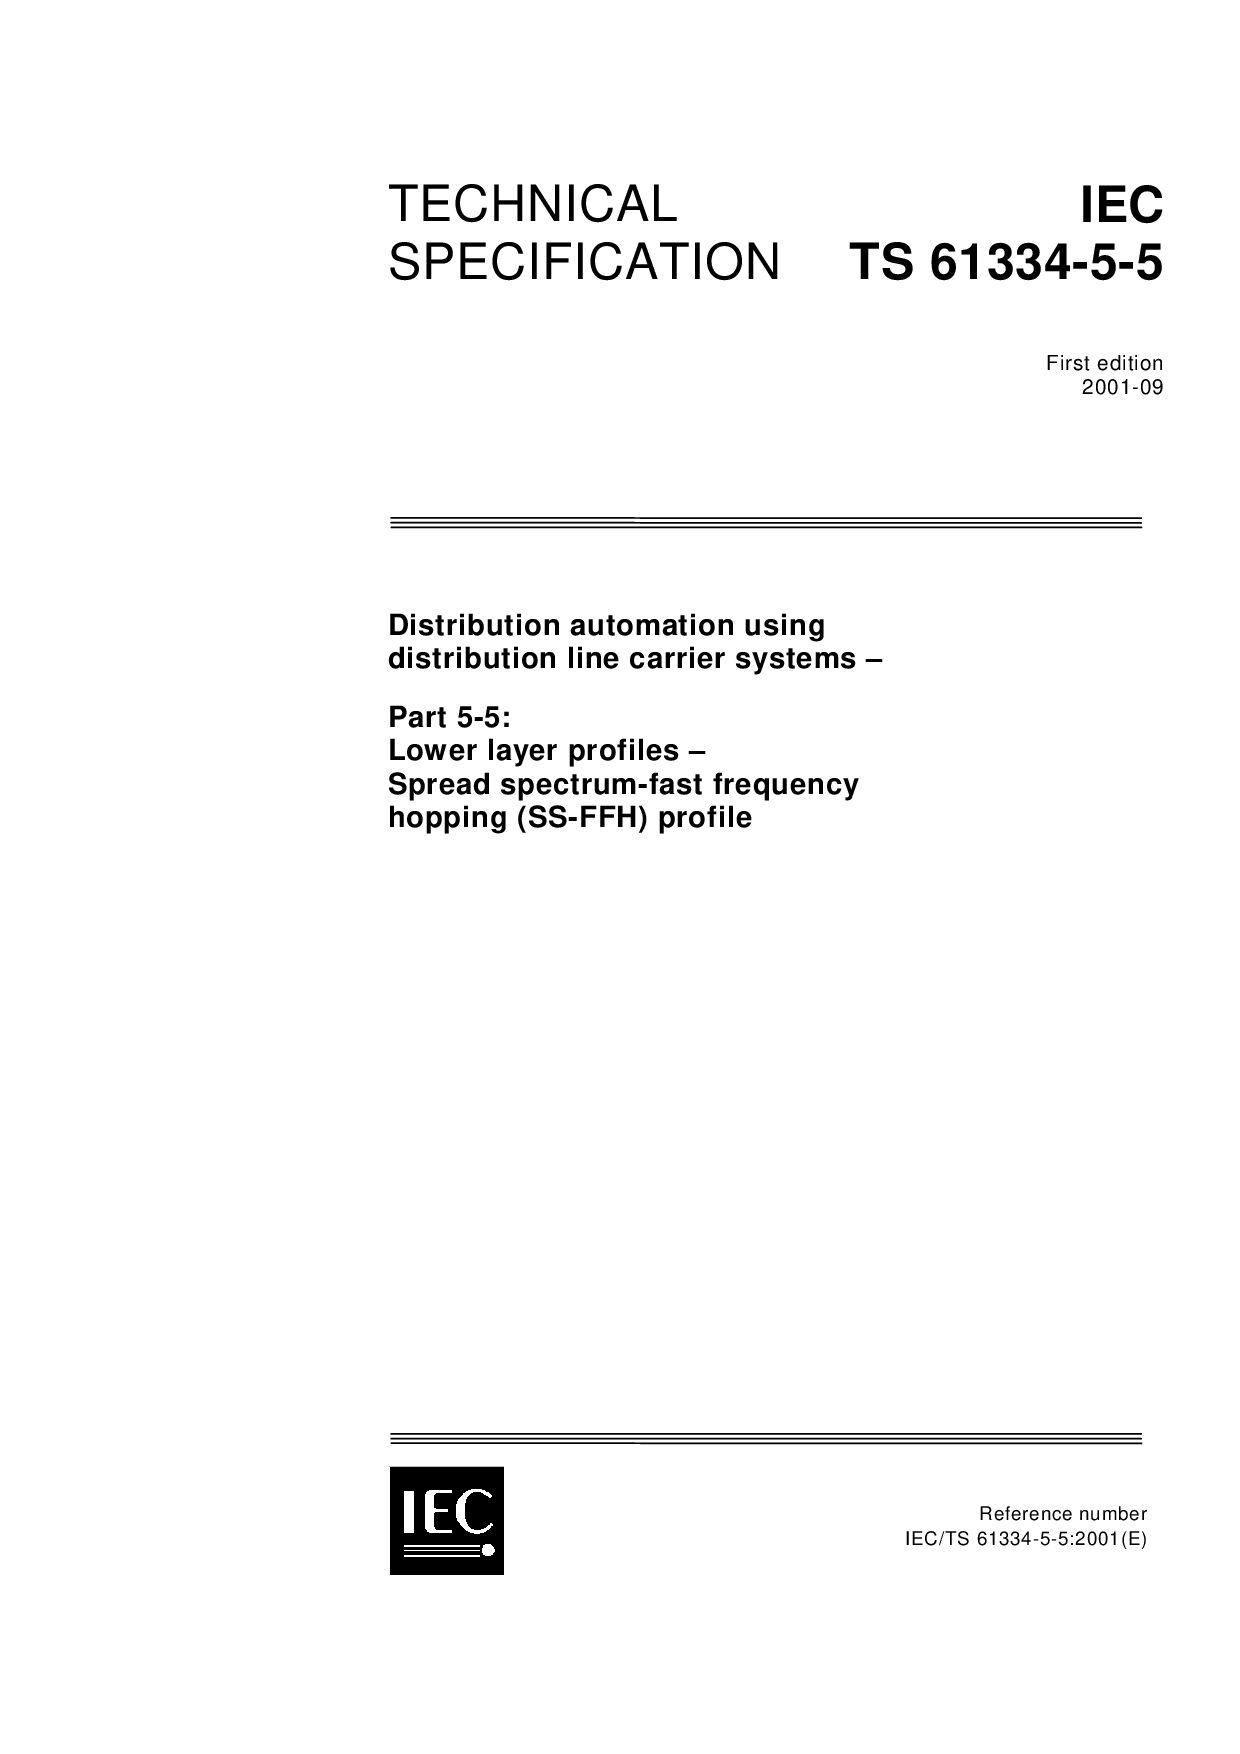 IEC TS 61334-5-5-2001